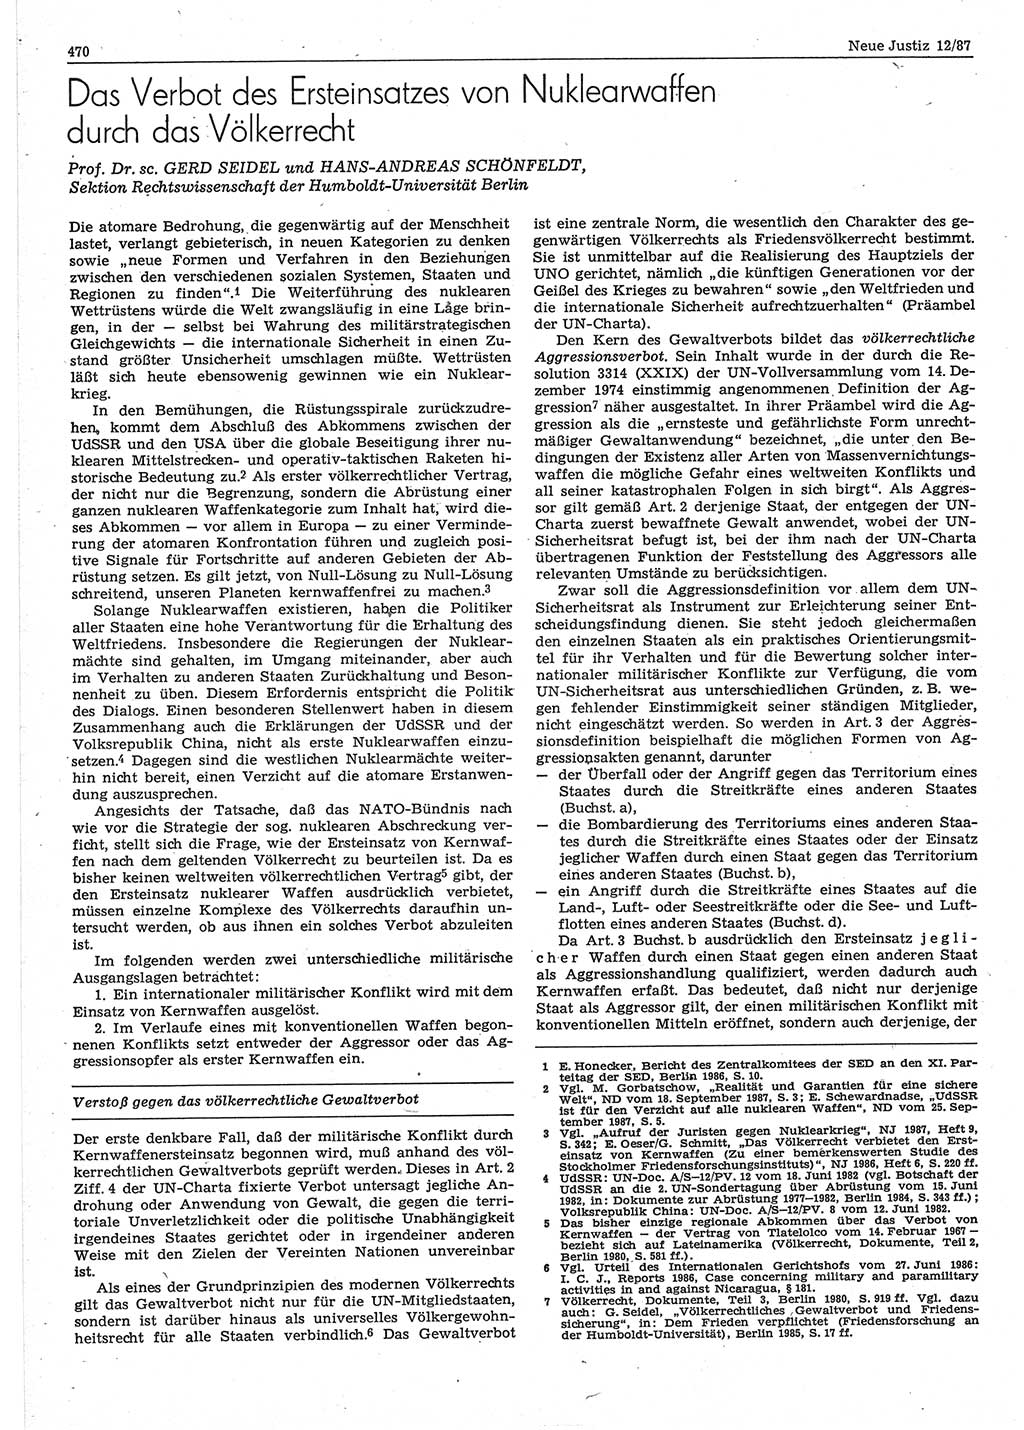 Neue Justiz (NJ), Zeitschrift für sozialistisches Recht und Gesetzlichkeit [Deutsche Demokratische Republik (DDR)], 41. Jahrgang 1987, Seite 470 (NJ DDR 1987, S. 470)